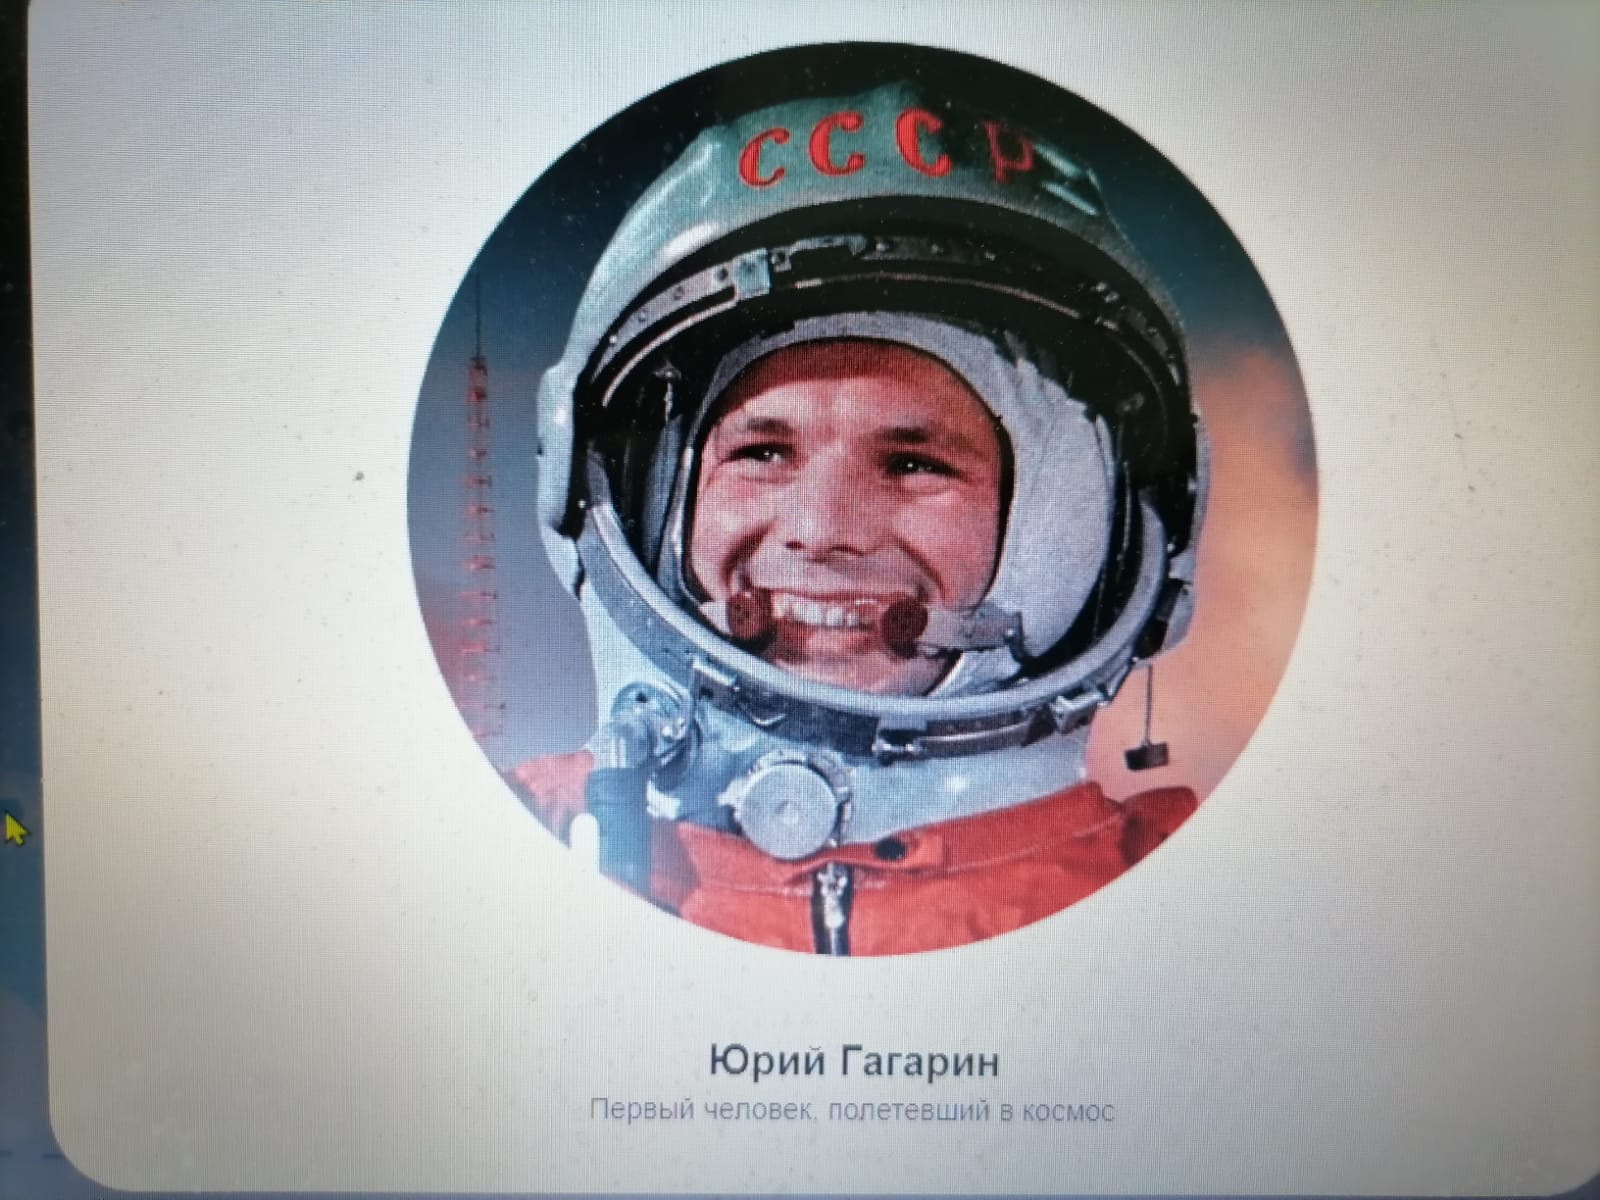 Разговоры о важном сегодня, 8 апреля, посвящены достижениям российской  космонавтики.